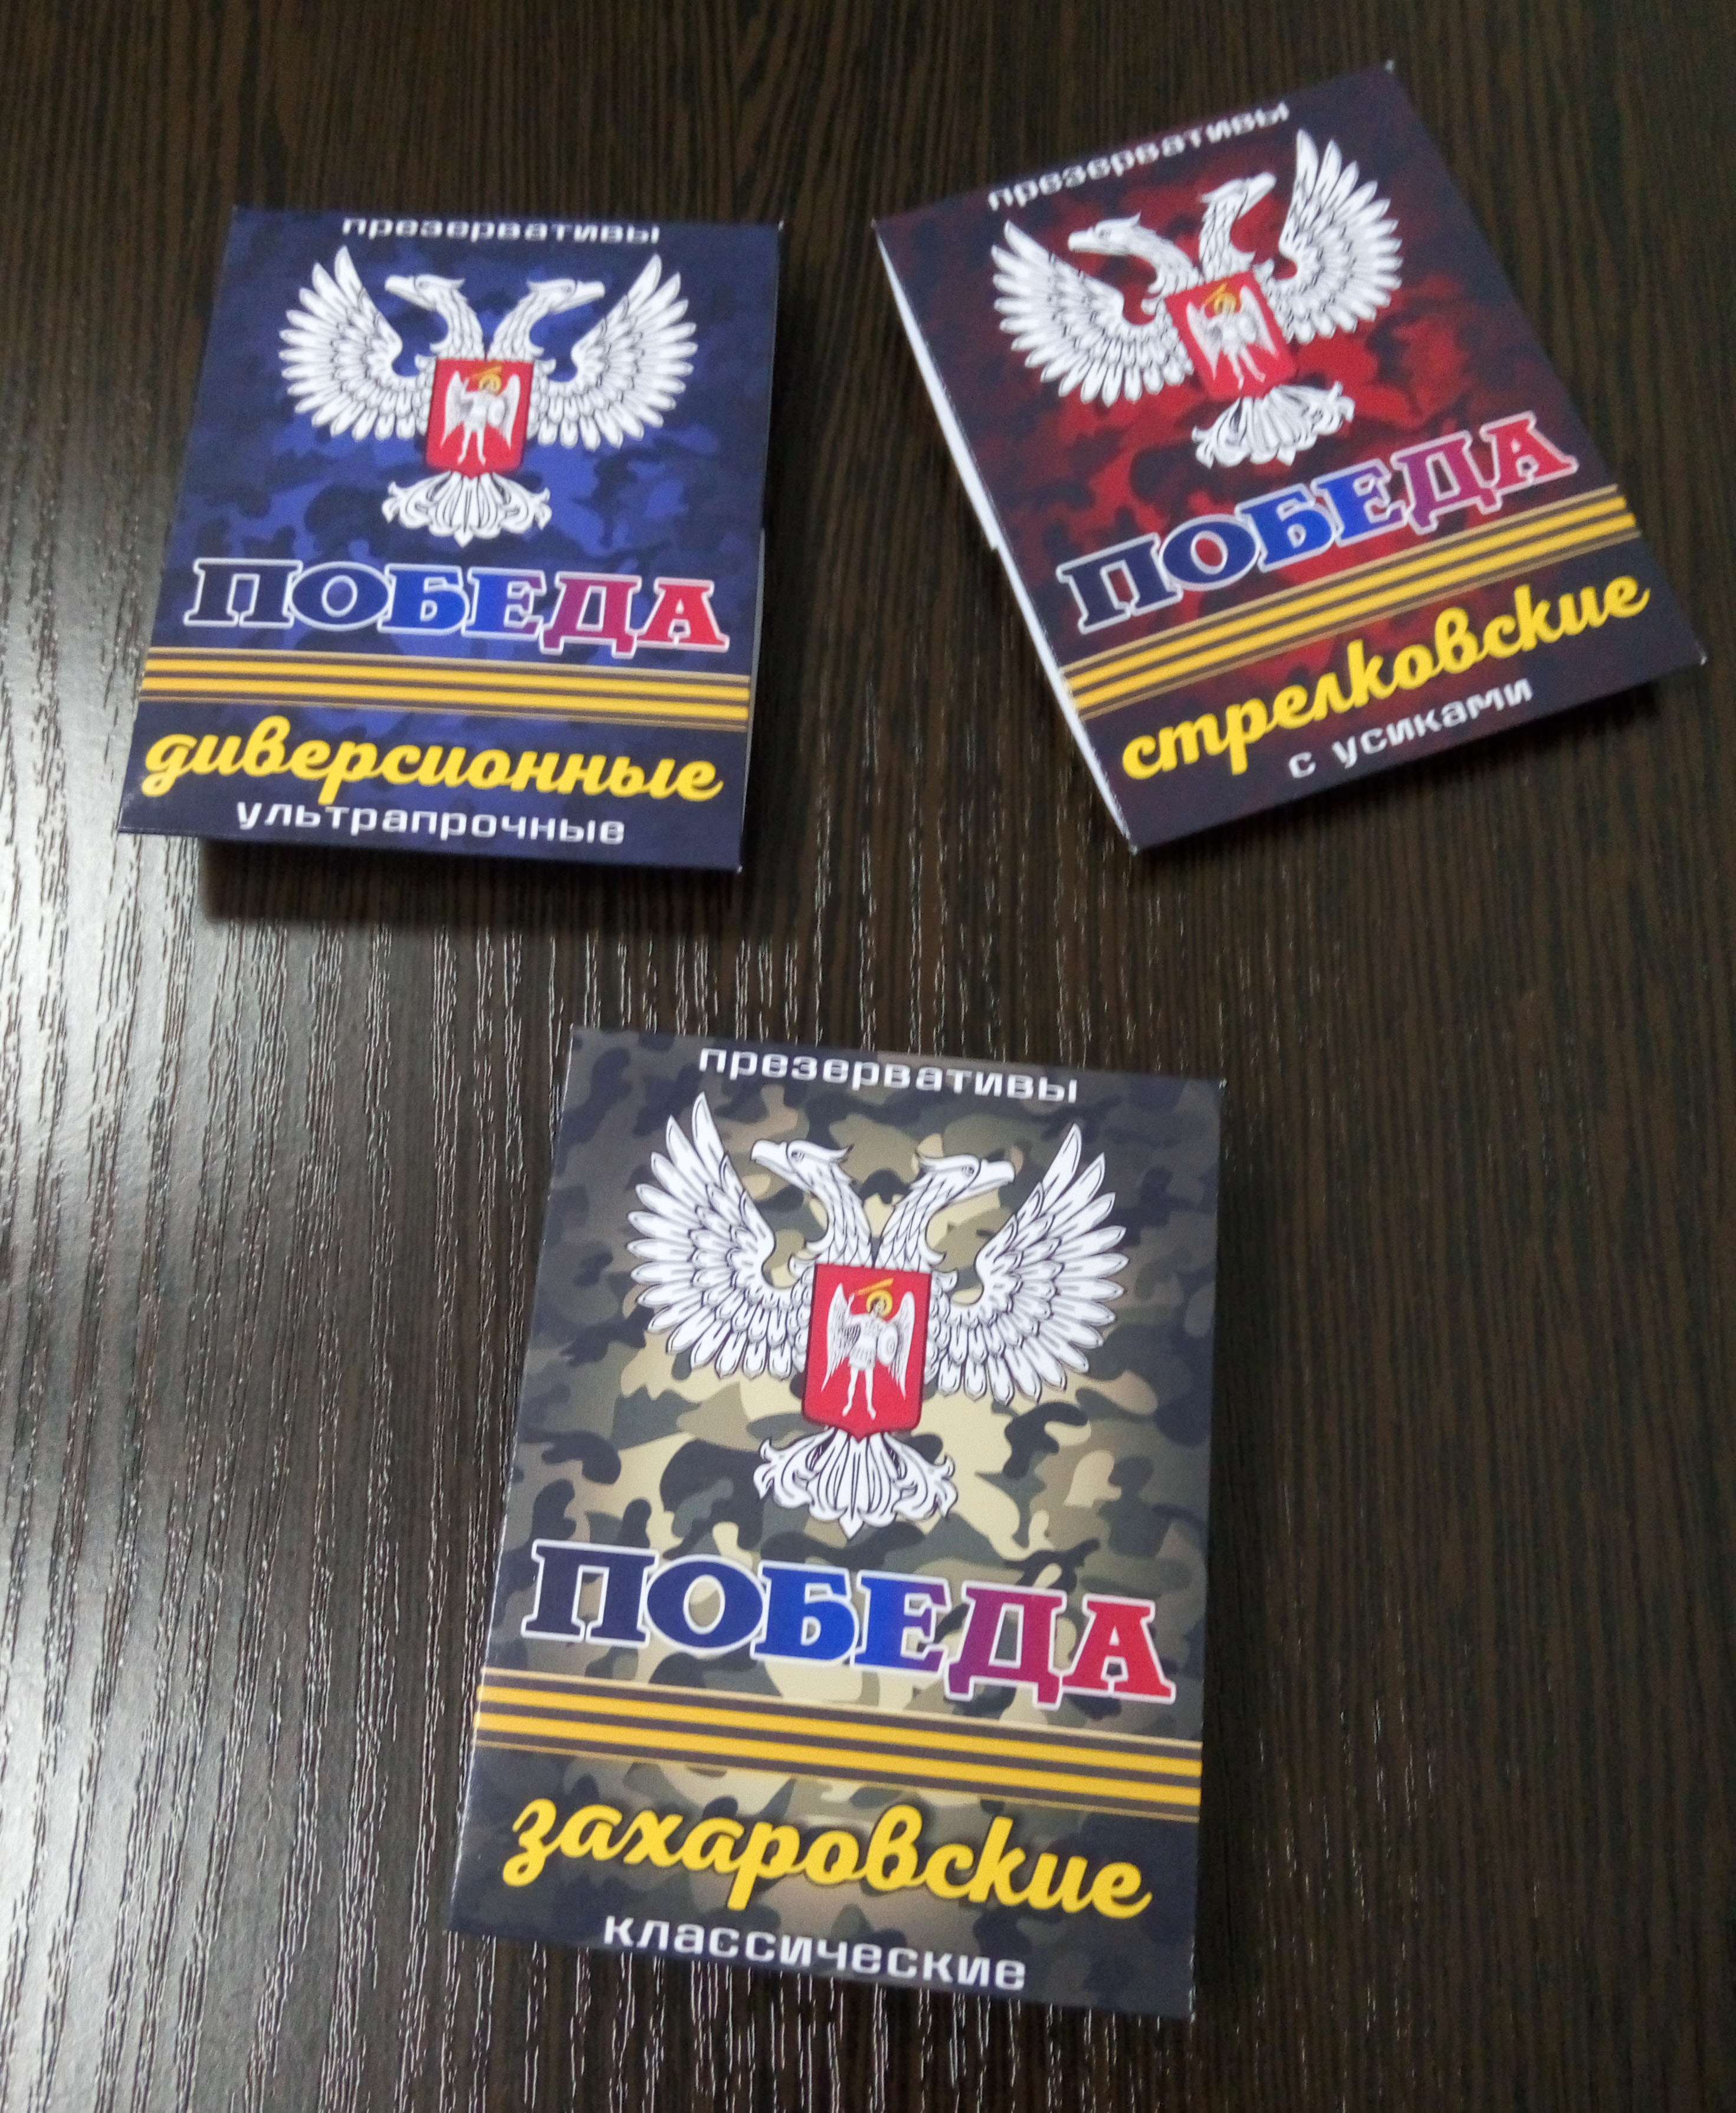 У мережі показали презервативи "ДНР": "захарівські" та "стрєлковські" з вусиками (ФОТО) - фото 5